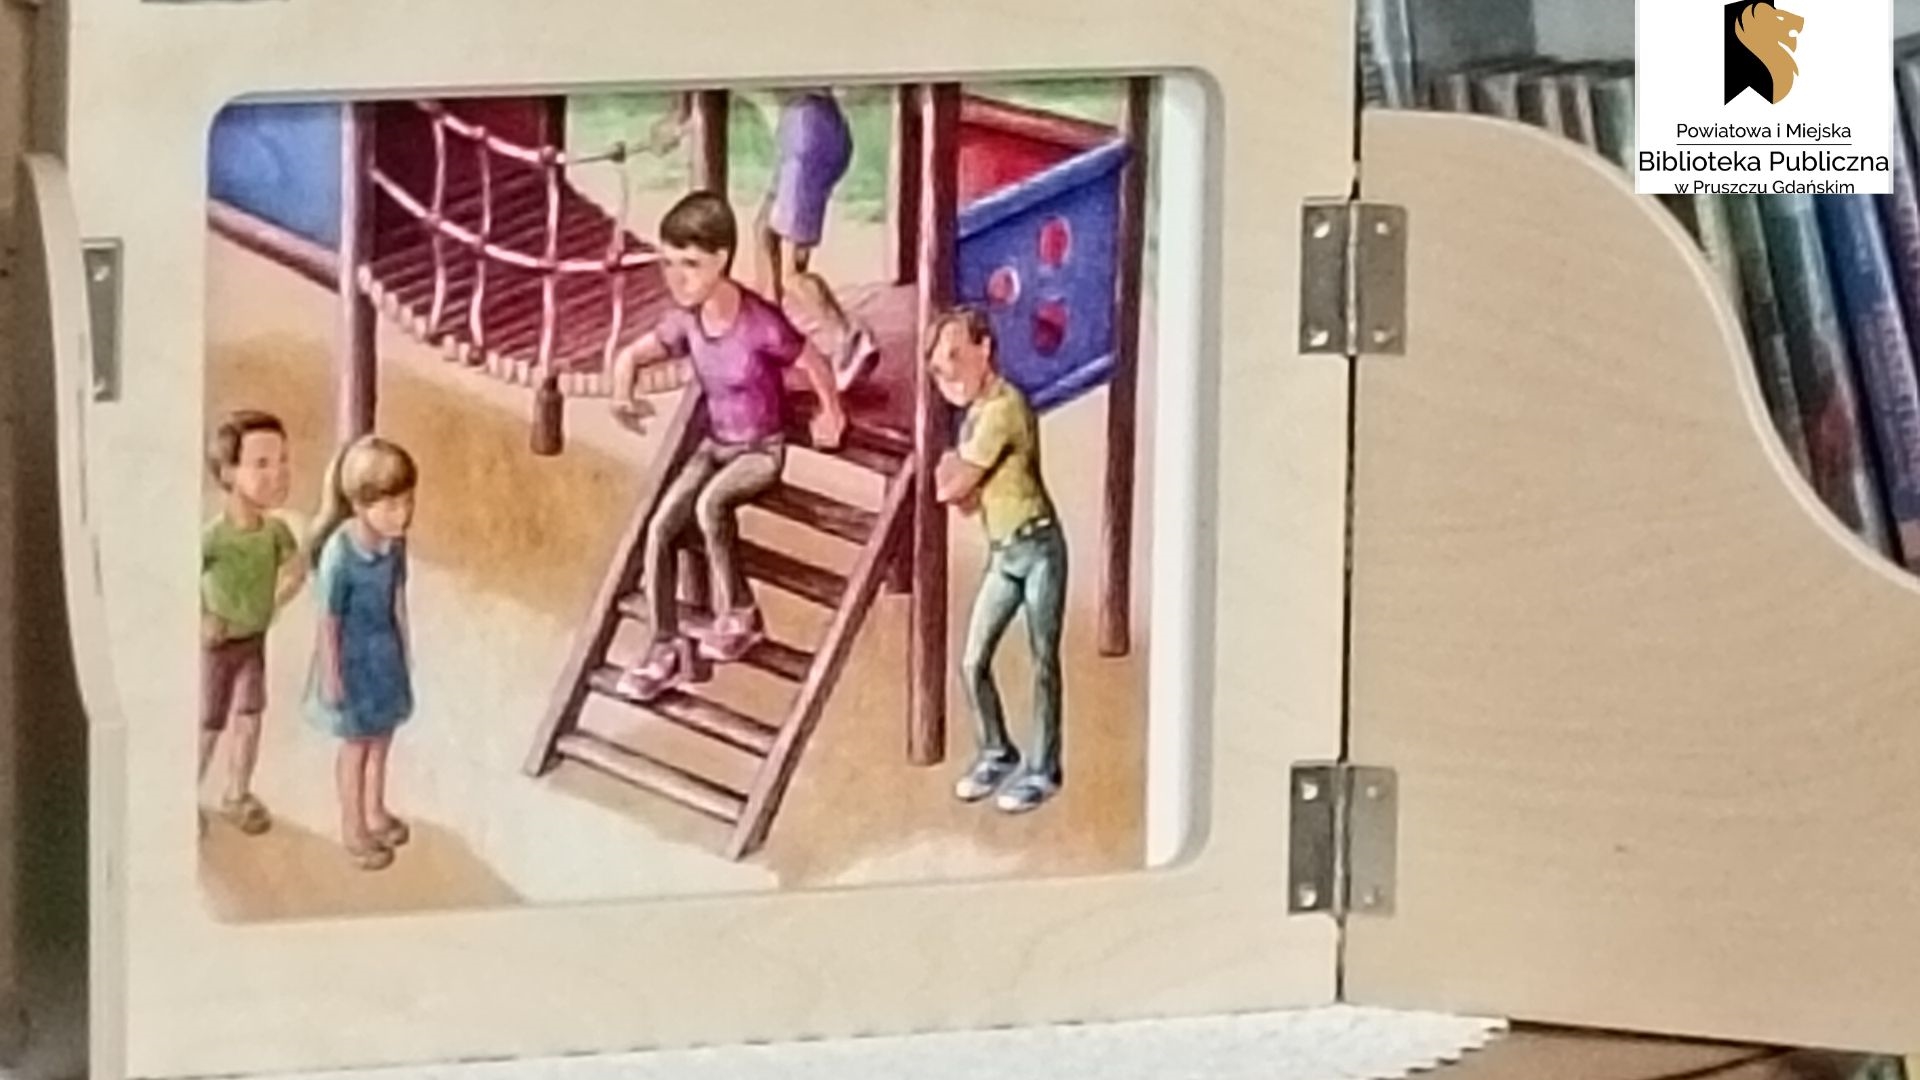 Fragment otwartej skrzynki kamishibai, z kolorową planszą przedstawiającą dzieci bawiące się na placu zabaw.